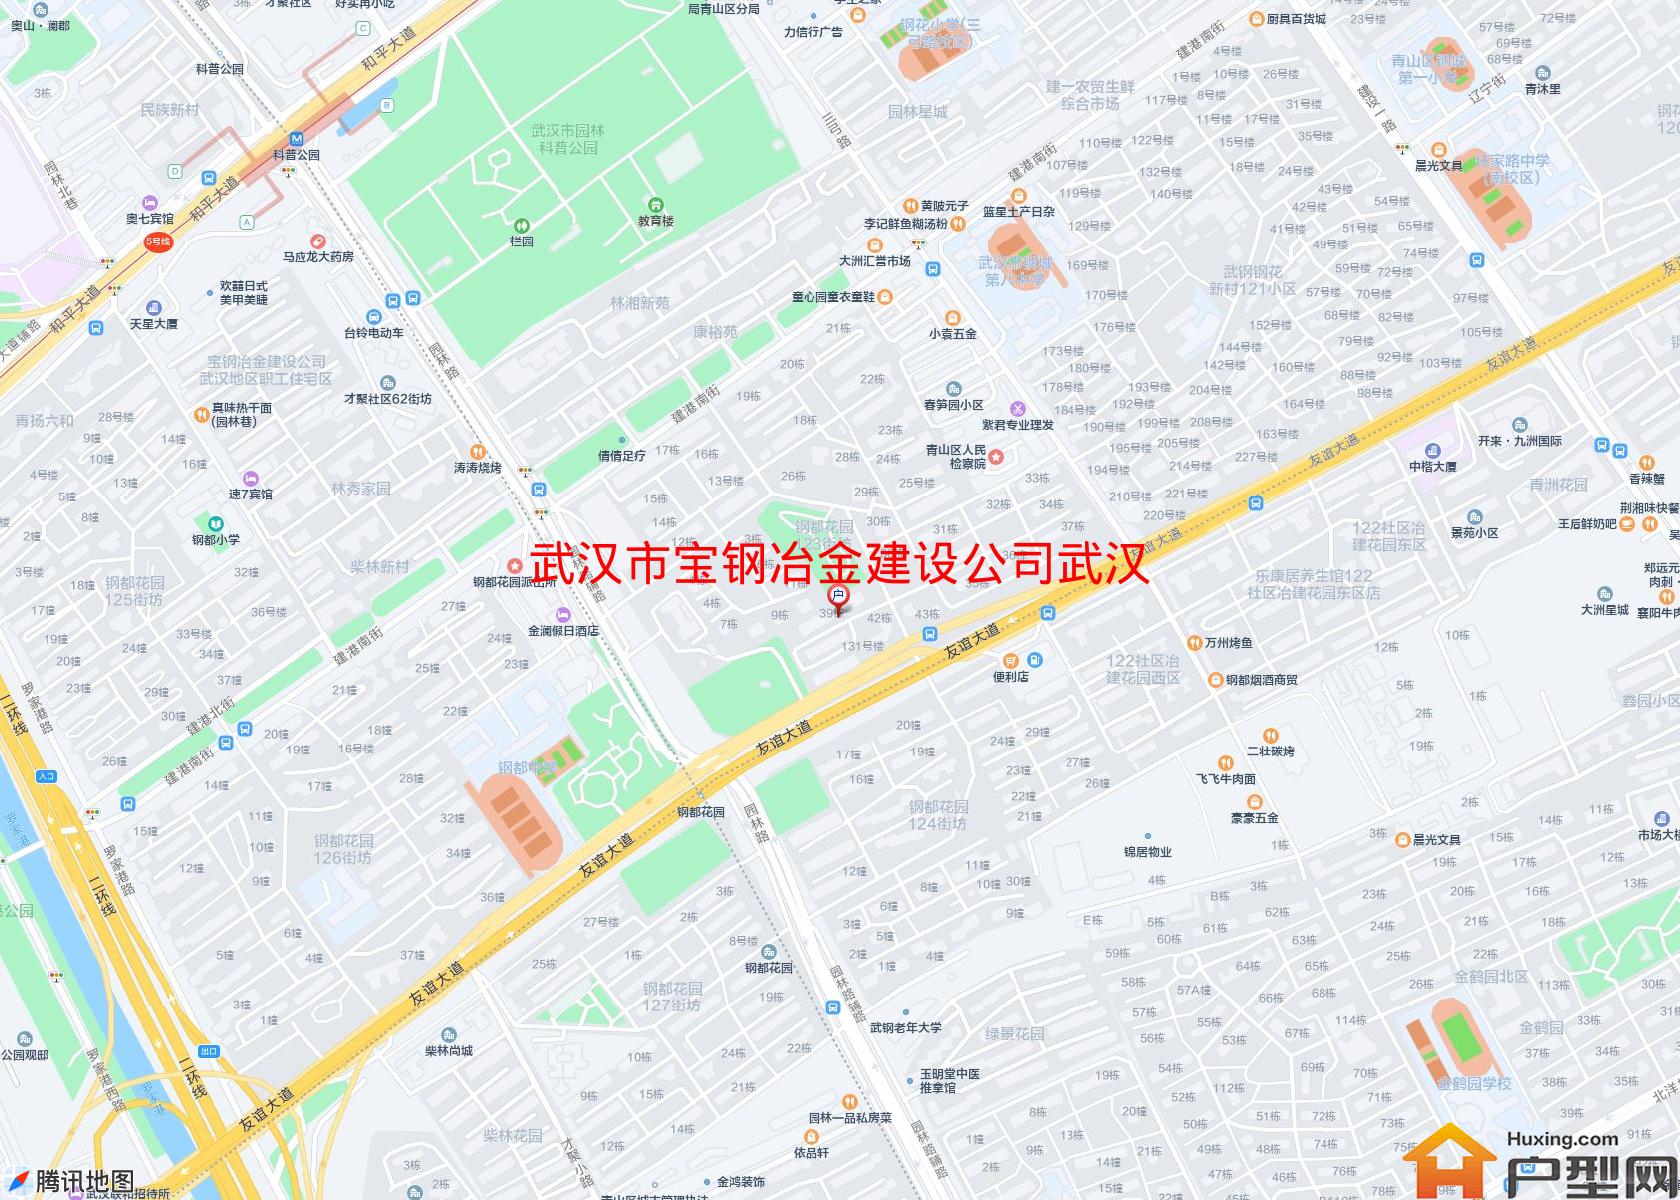 宝钢冶金建设公司武汉地区职工住宅区小区 - 户型网